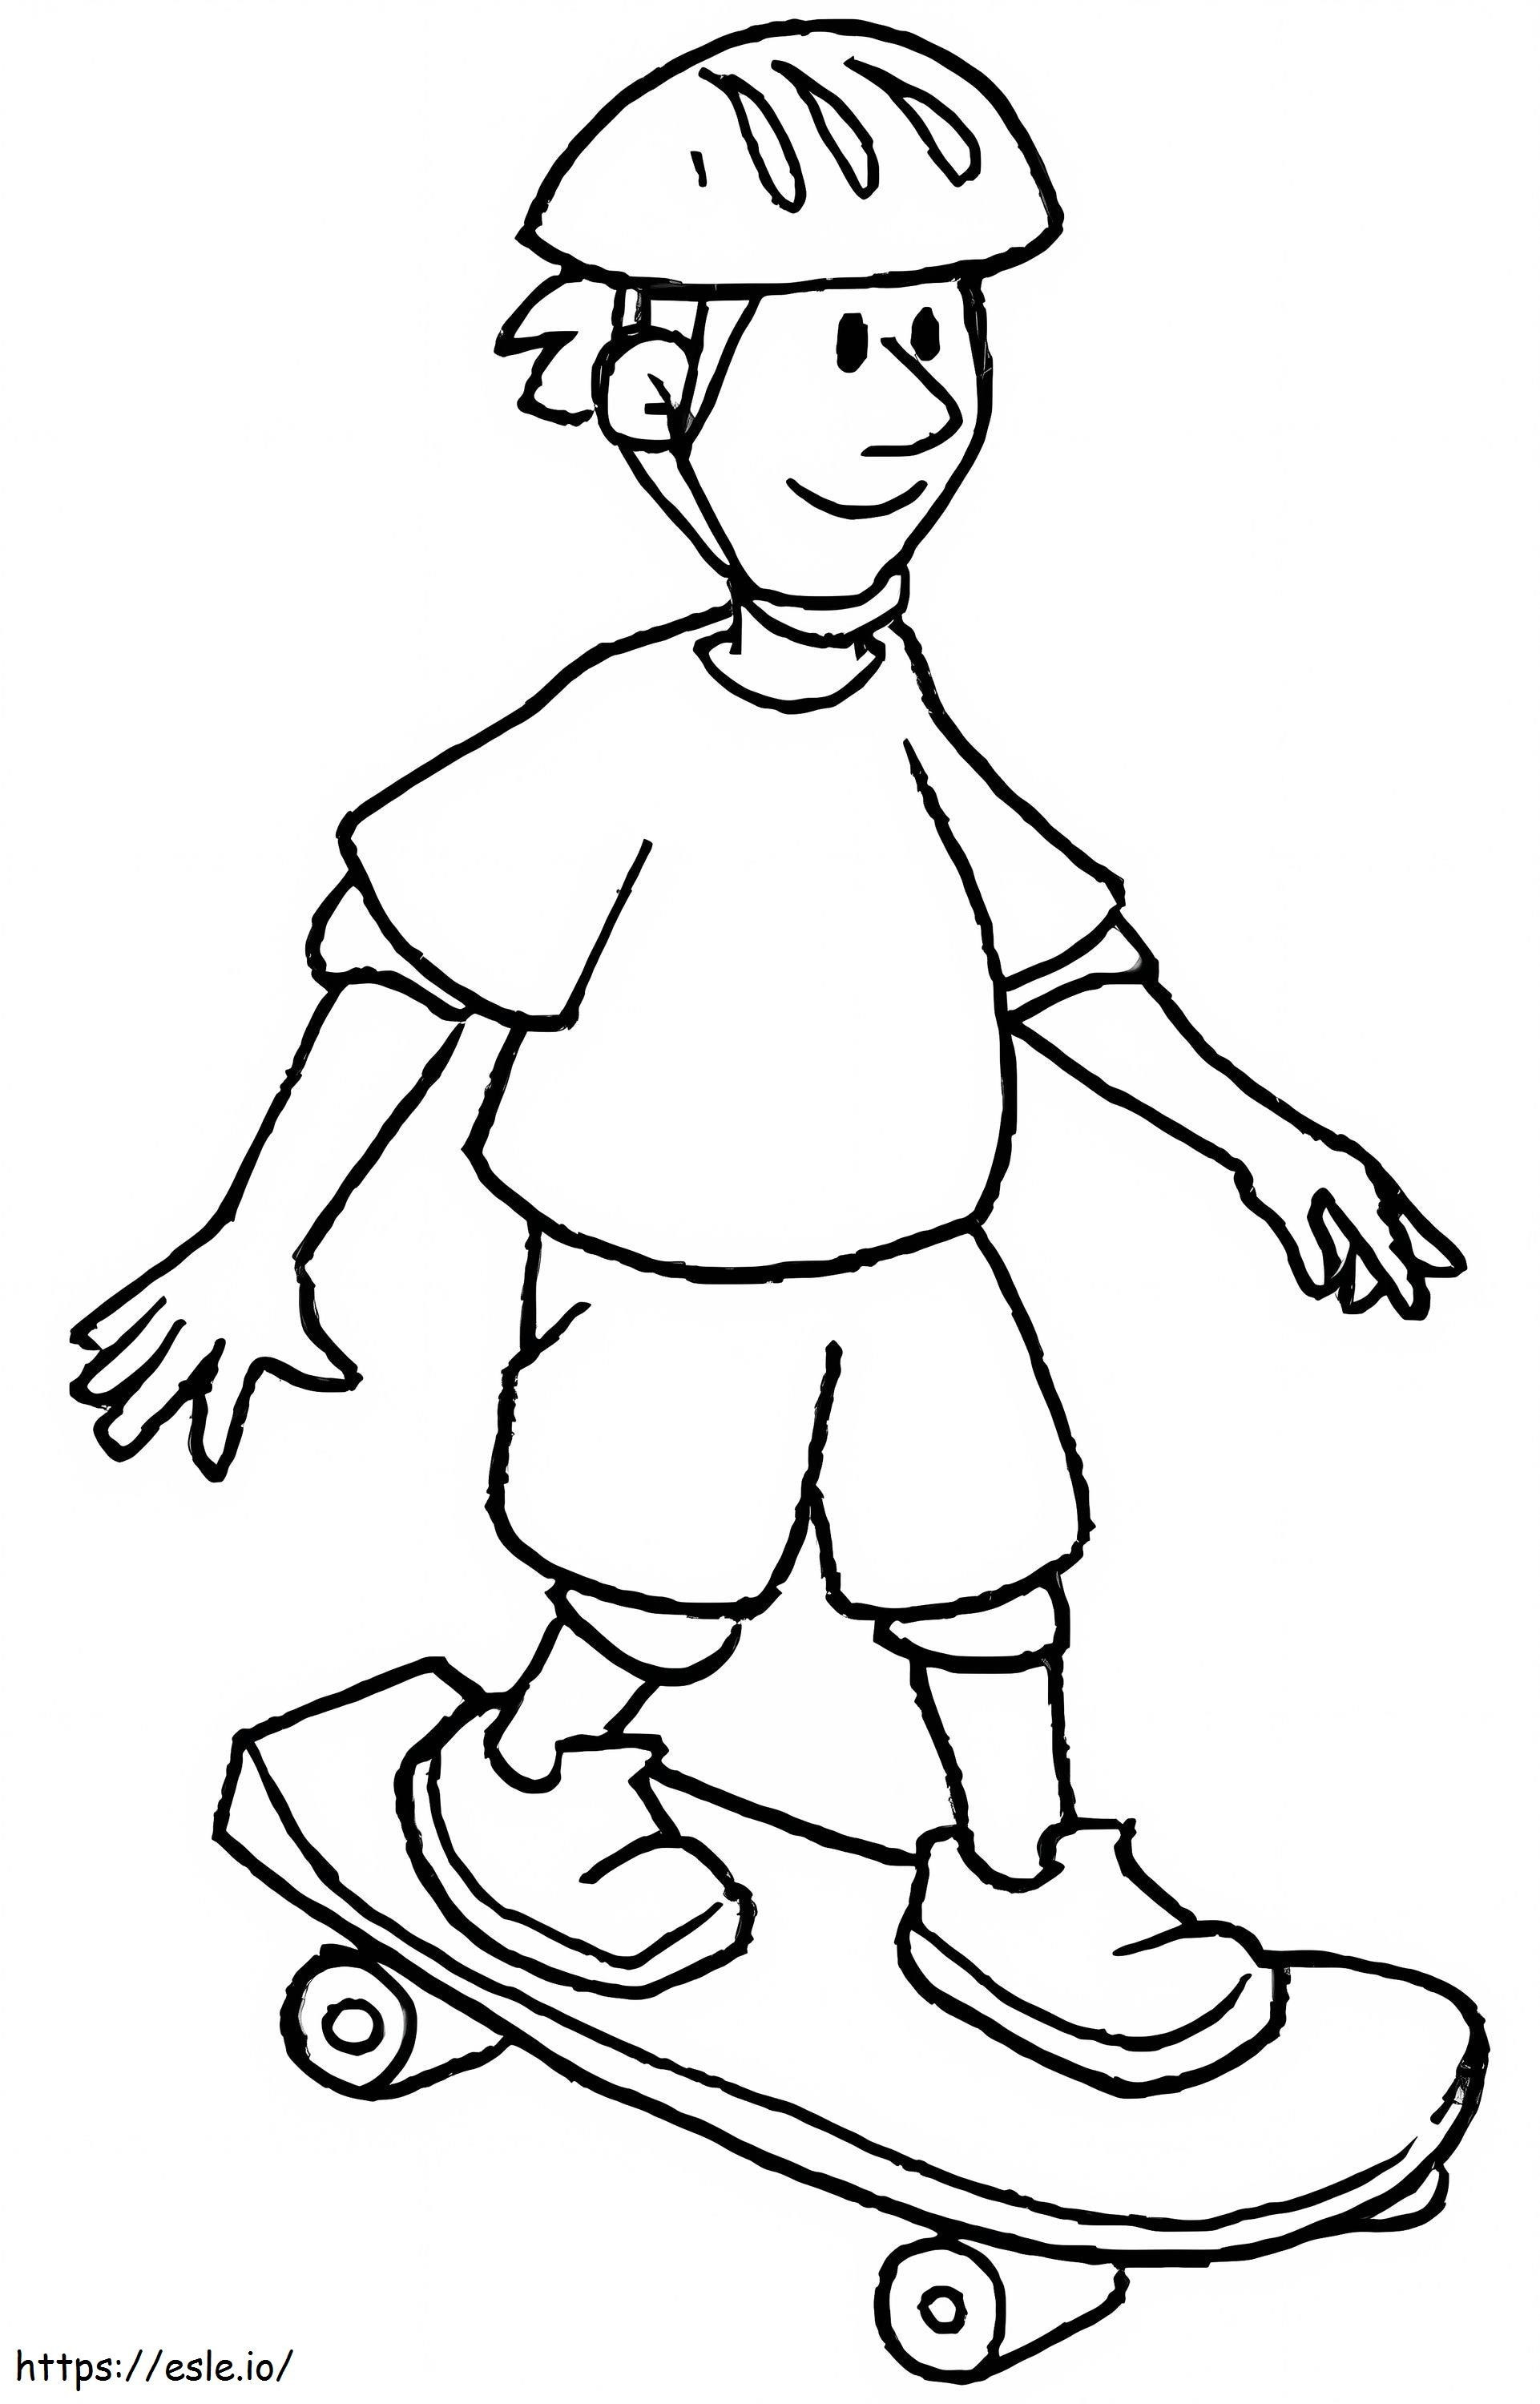 Ein Junge auf einem Skateboard ausmalbilder